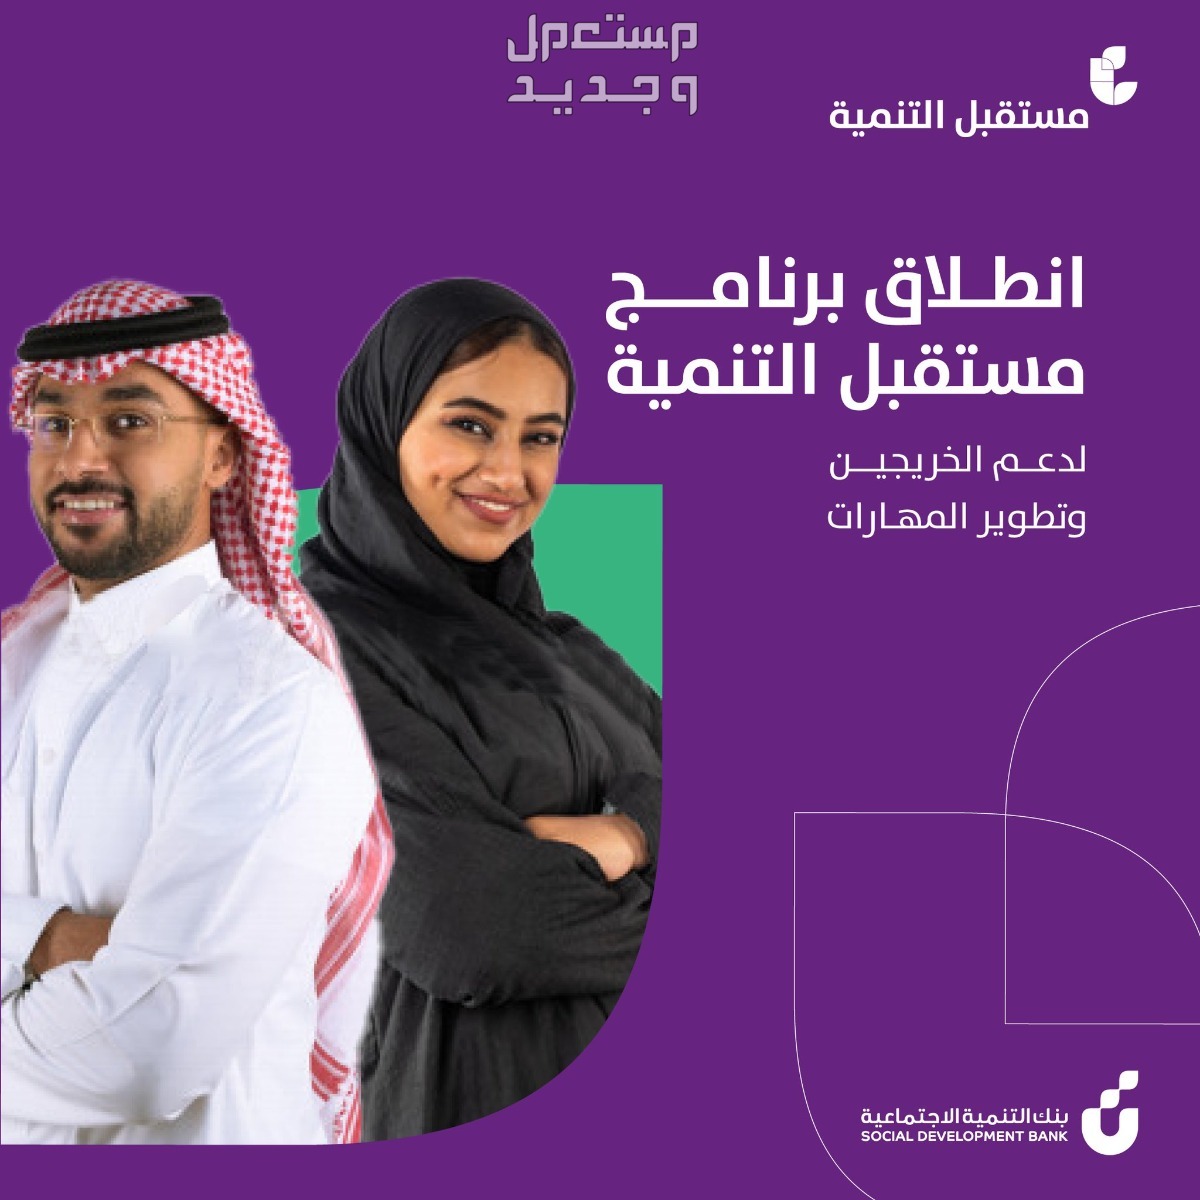 خطوات التقديم في برنامج تمويل الخريجين بنك التنمية الاجتماعية والشروط المطلوبة في عمان برنامج تمويل الخريجين